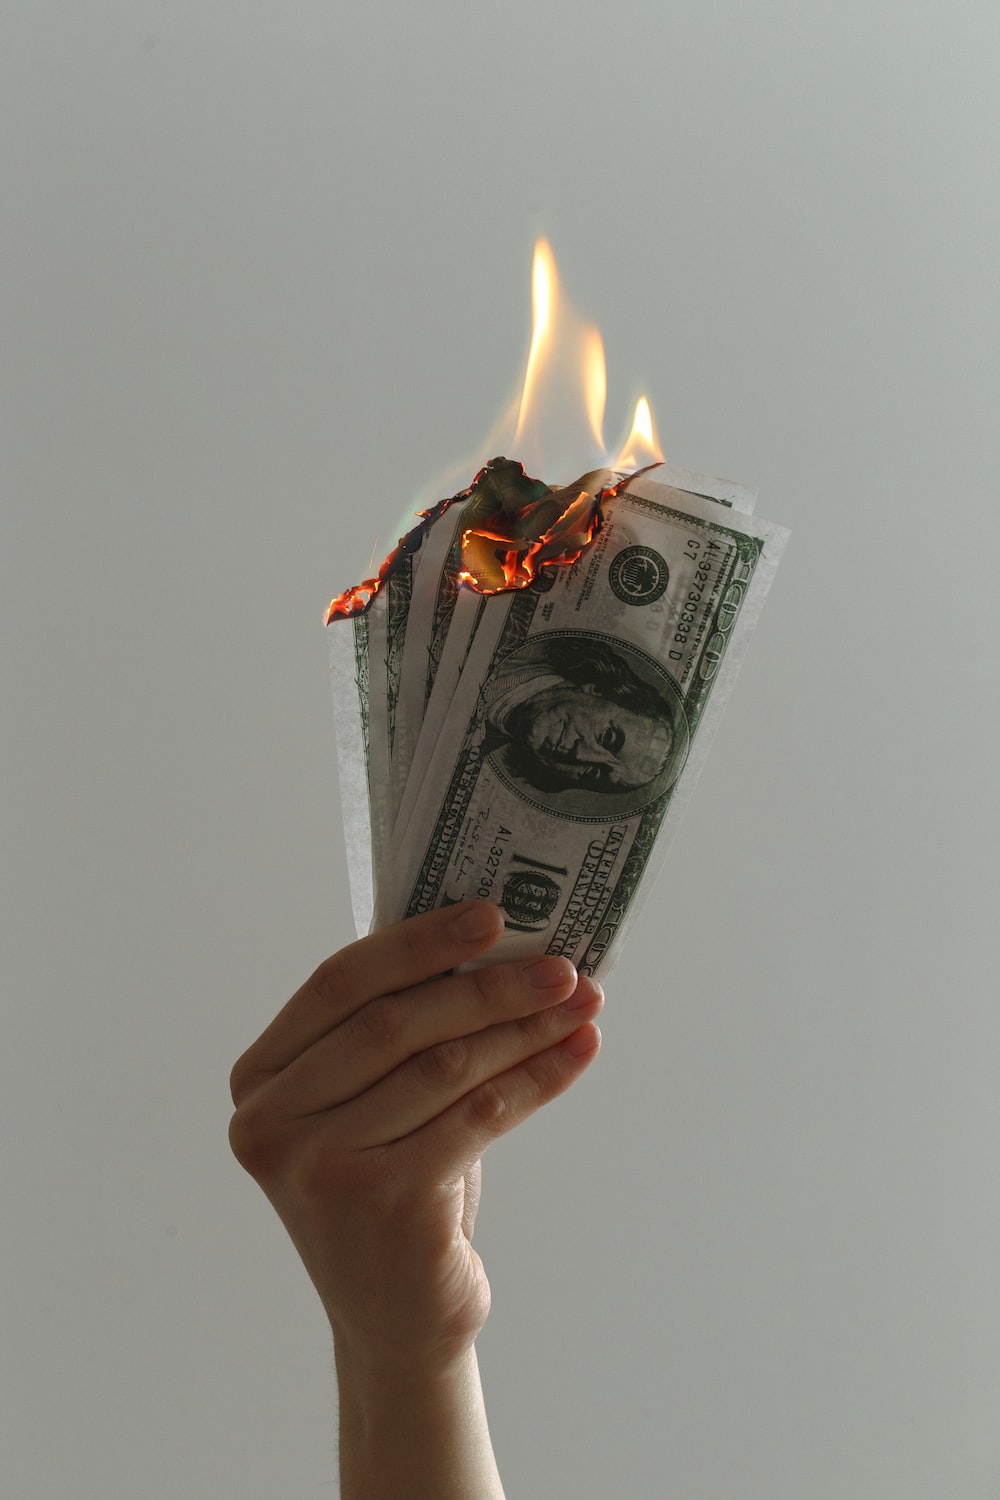 How do you fireproof money?